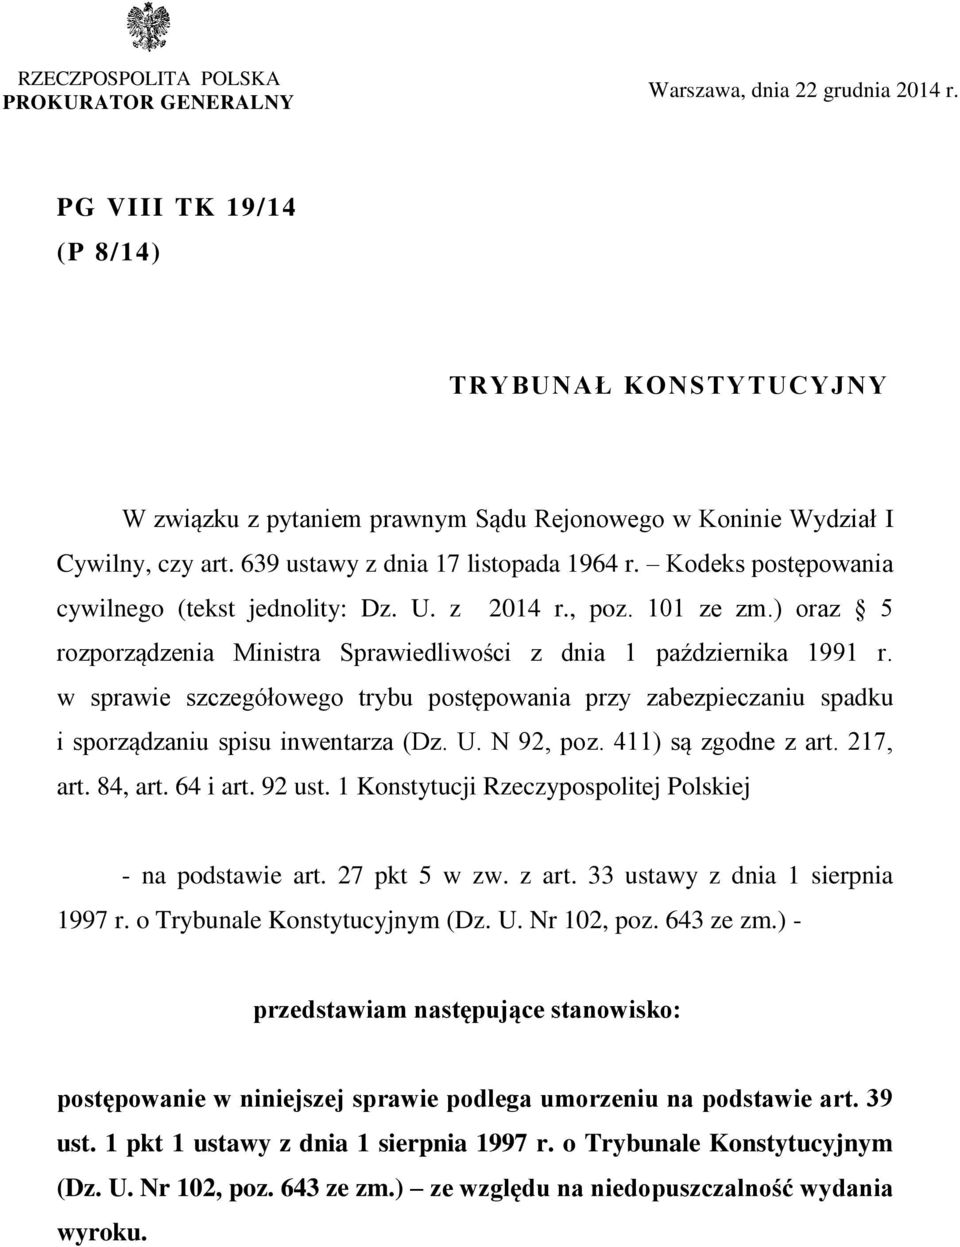 Kodeks postępowania cywilnego (tekst jednolity: Dz. U. z 2014 r., poz. 101 ze zm.) oraz 5 rozporządzenia Ministra Sprawiedliwości z dnia 1 października 1991 r.